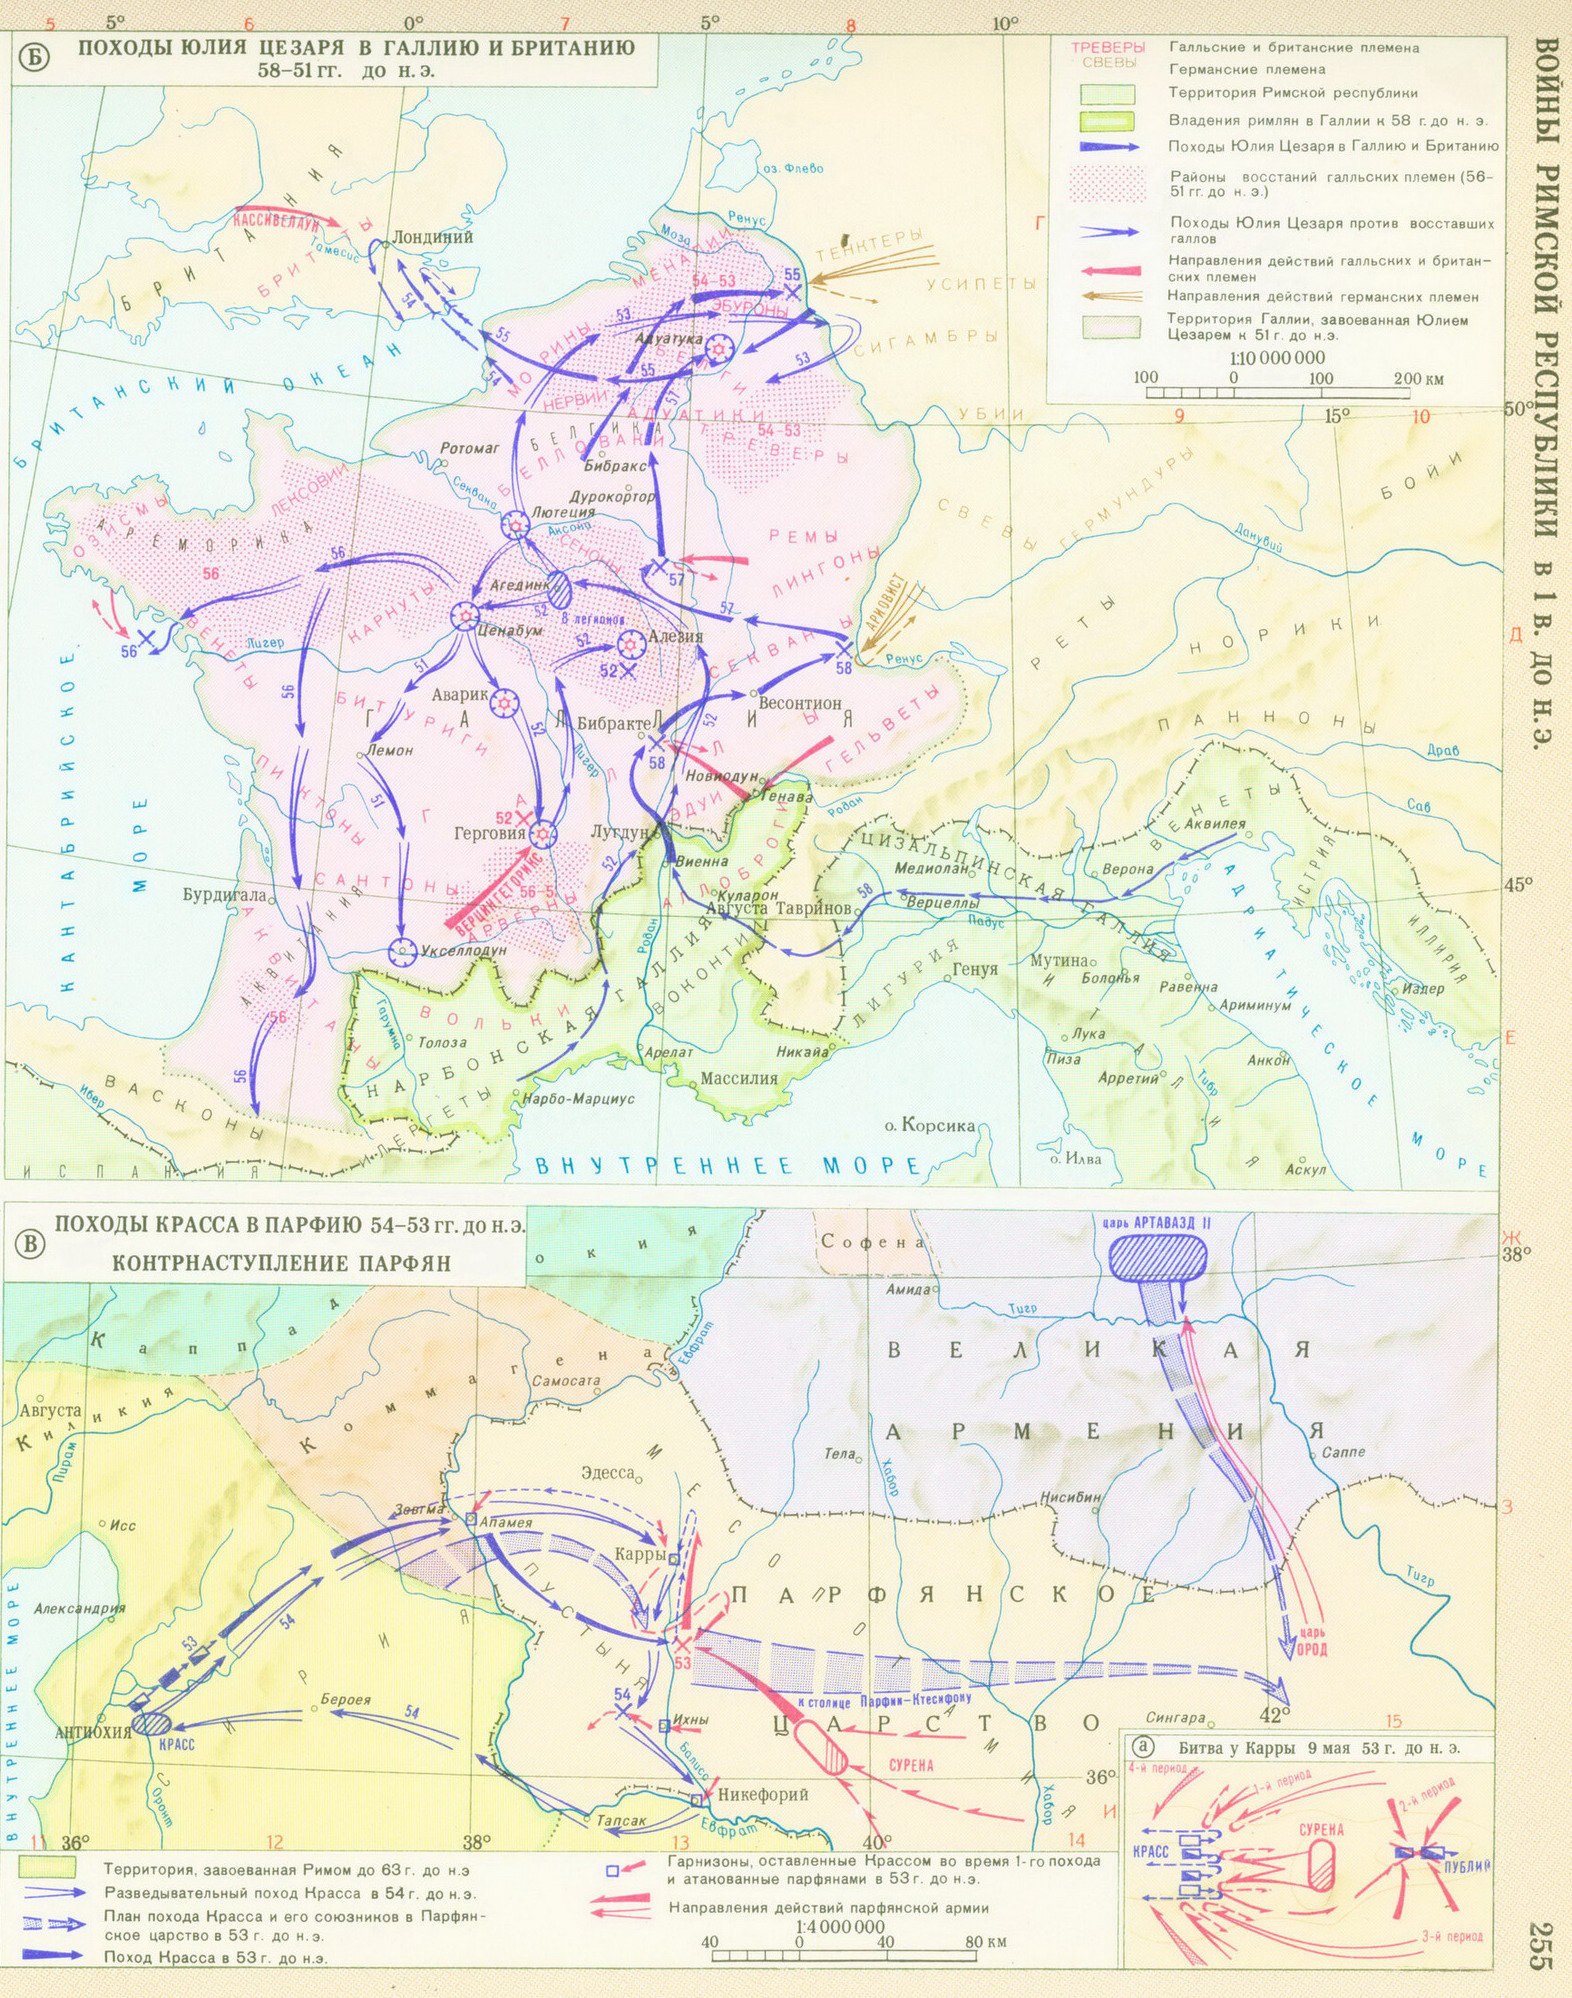 Гражданские войны в риме в 40 30 е гг до н э карта